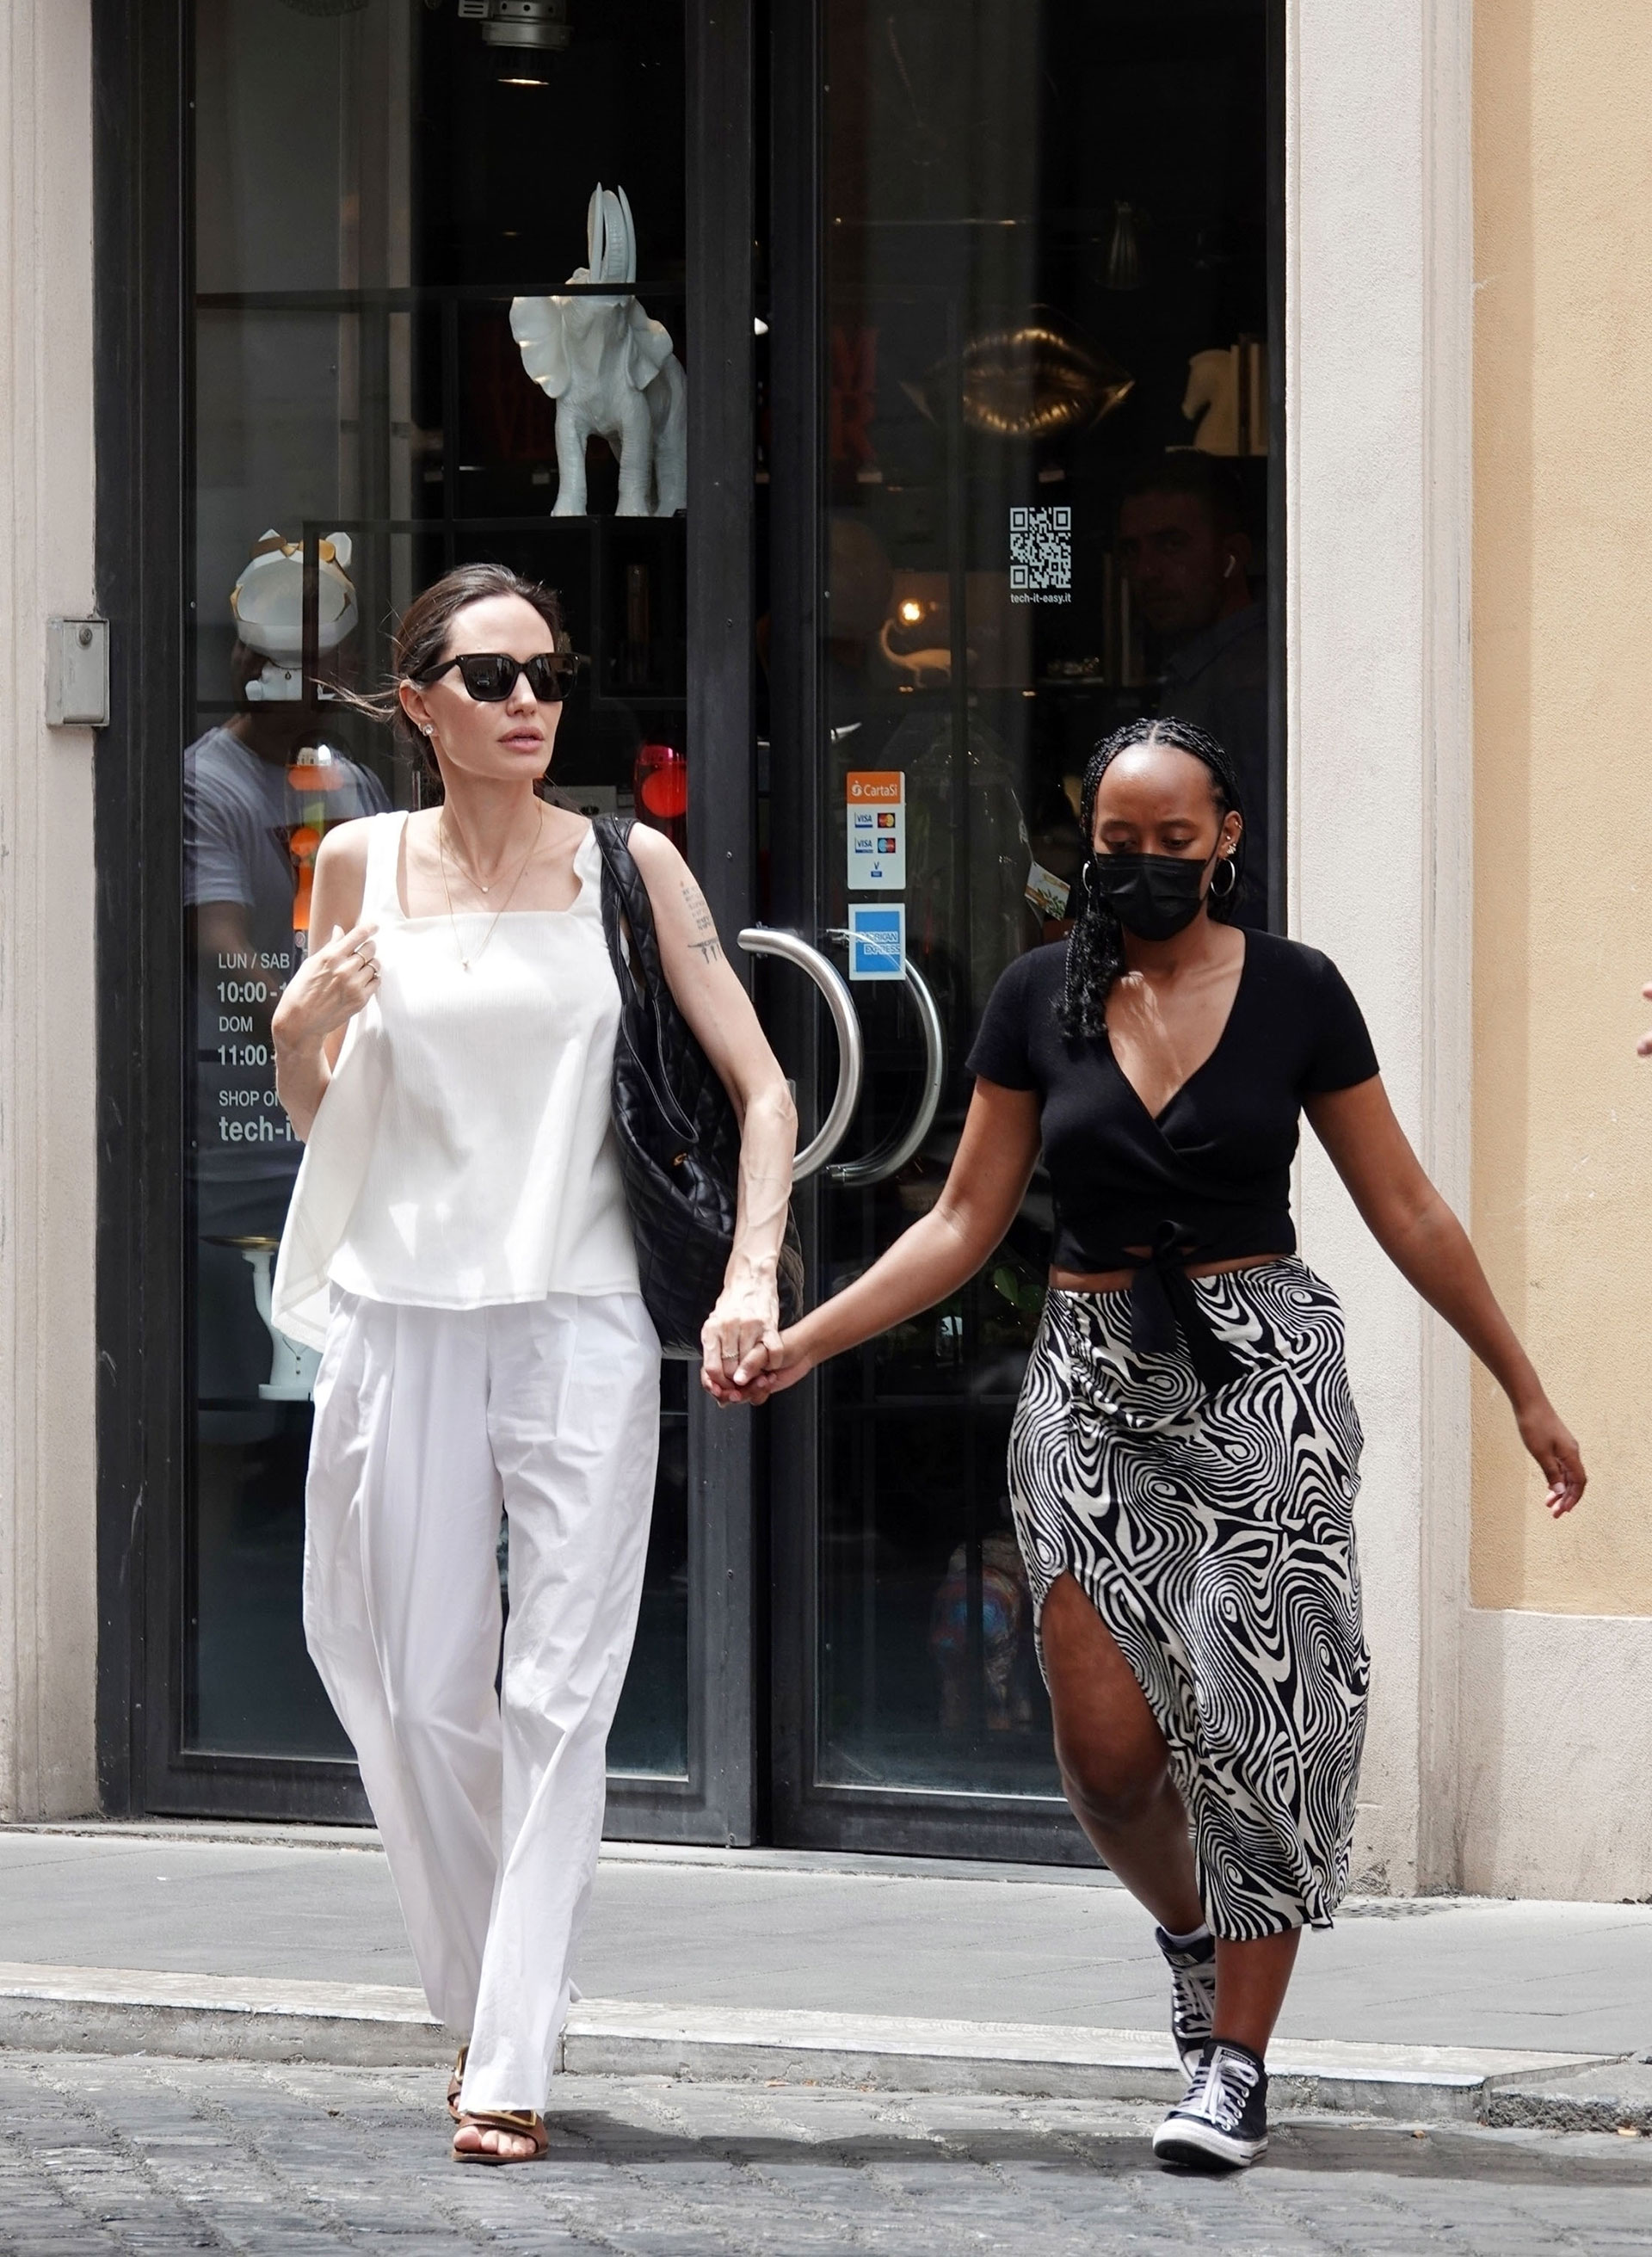 Día de compras. Angelina Jolie y su hija Zahara aprovecharon su estadía en Roma, Italia, para pasear y también recorrieron las tiendas más exclusivas de indumentaria, zapatos y accesorios. La actriz lució un look total white mientras que la adolescente optó por una pollera blanca y negra que combinó con su remera